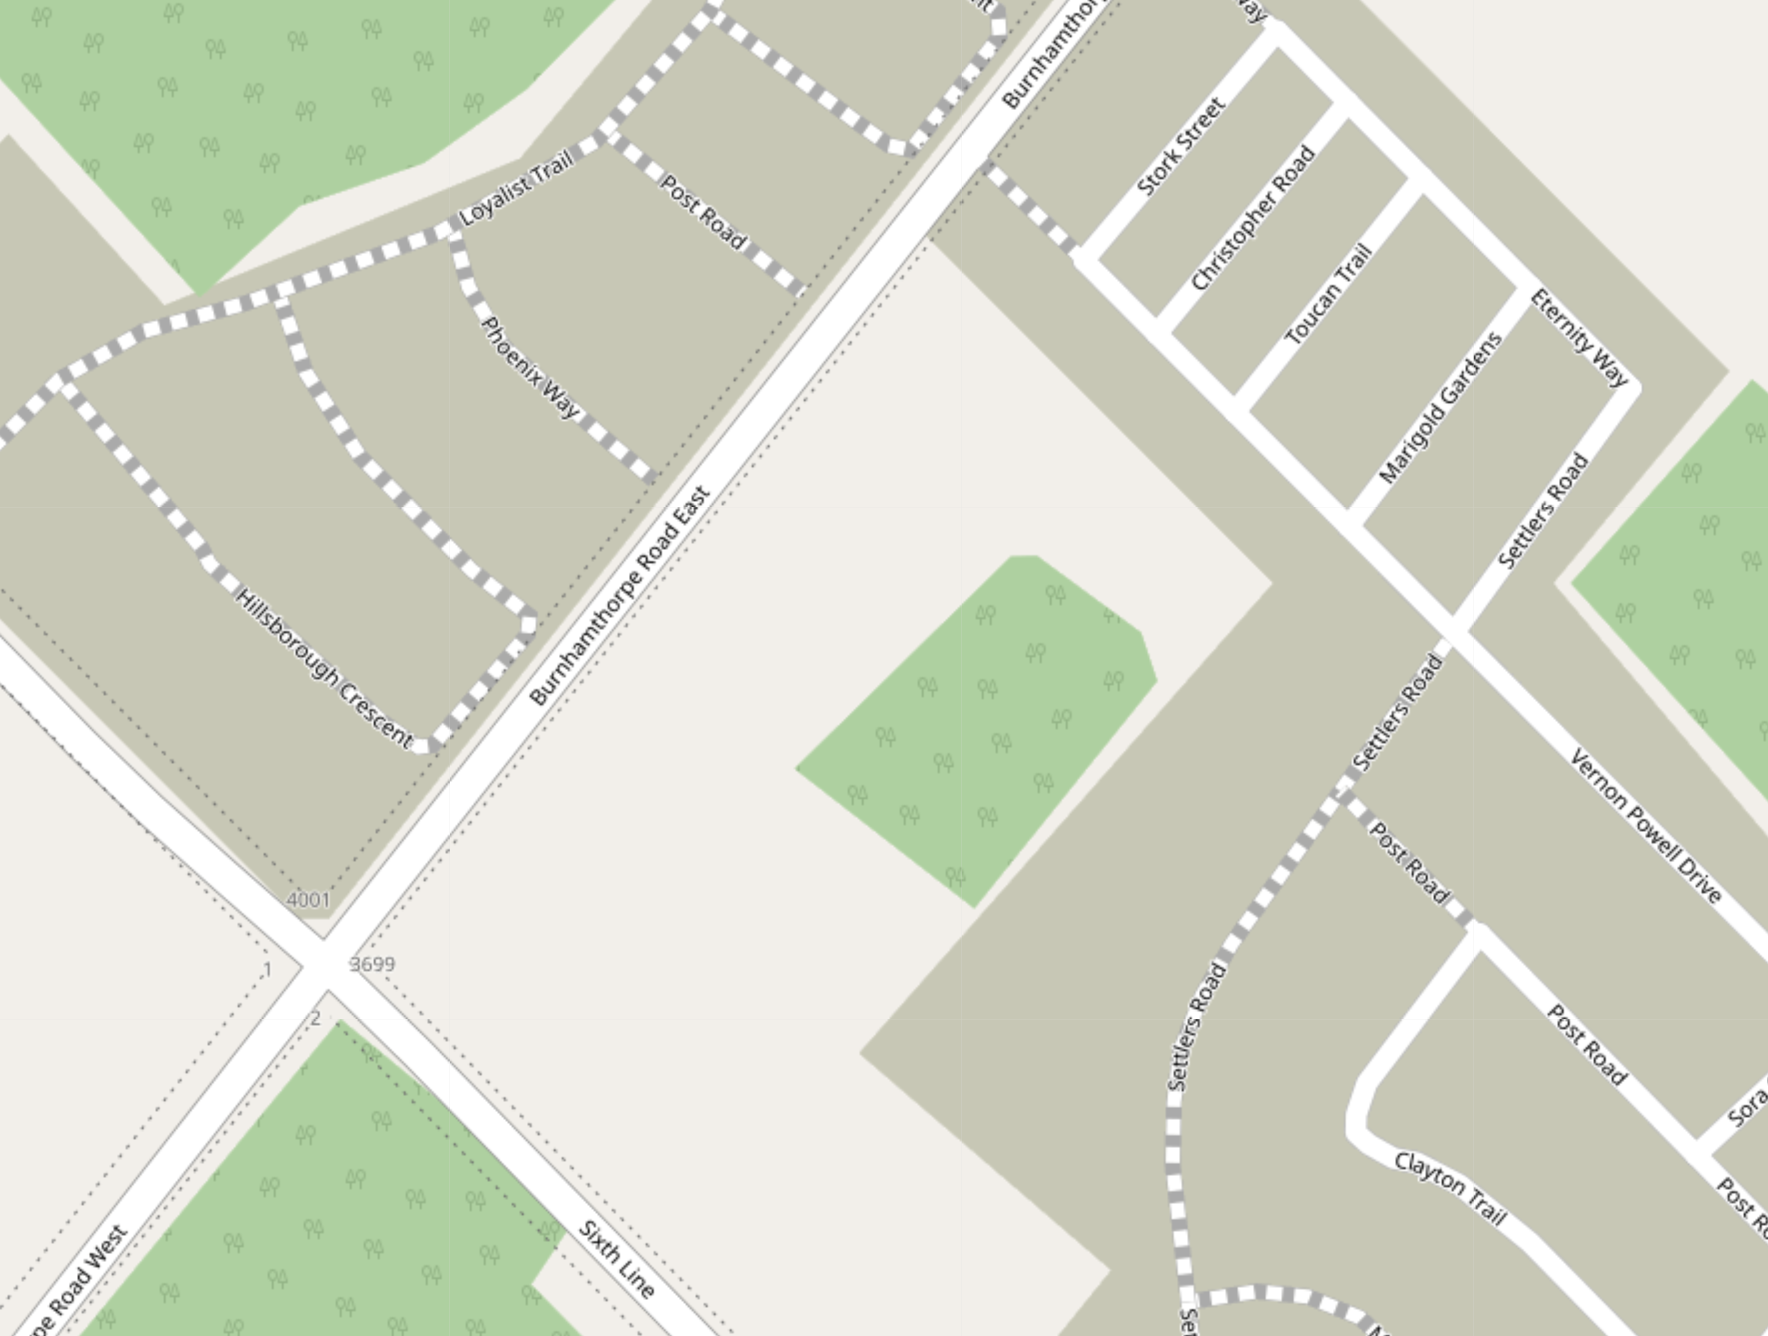 OpenStreetMap.org